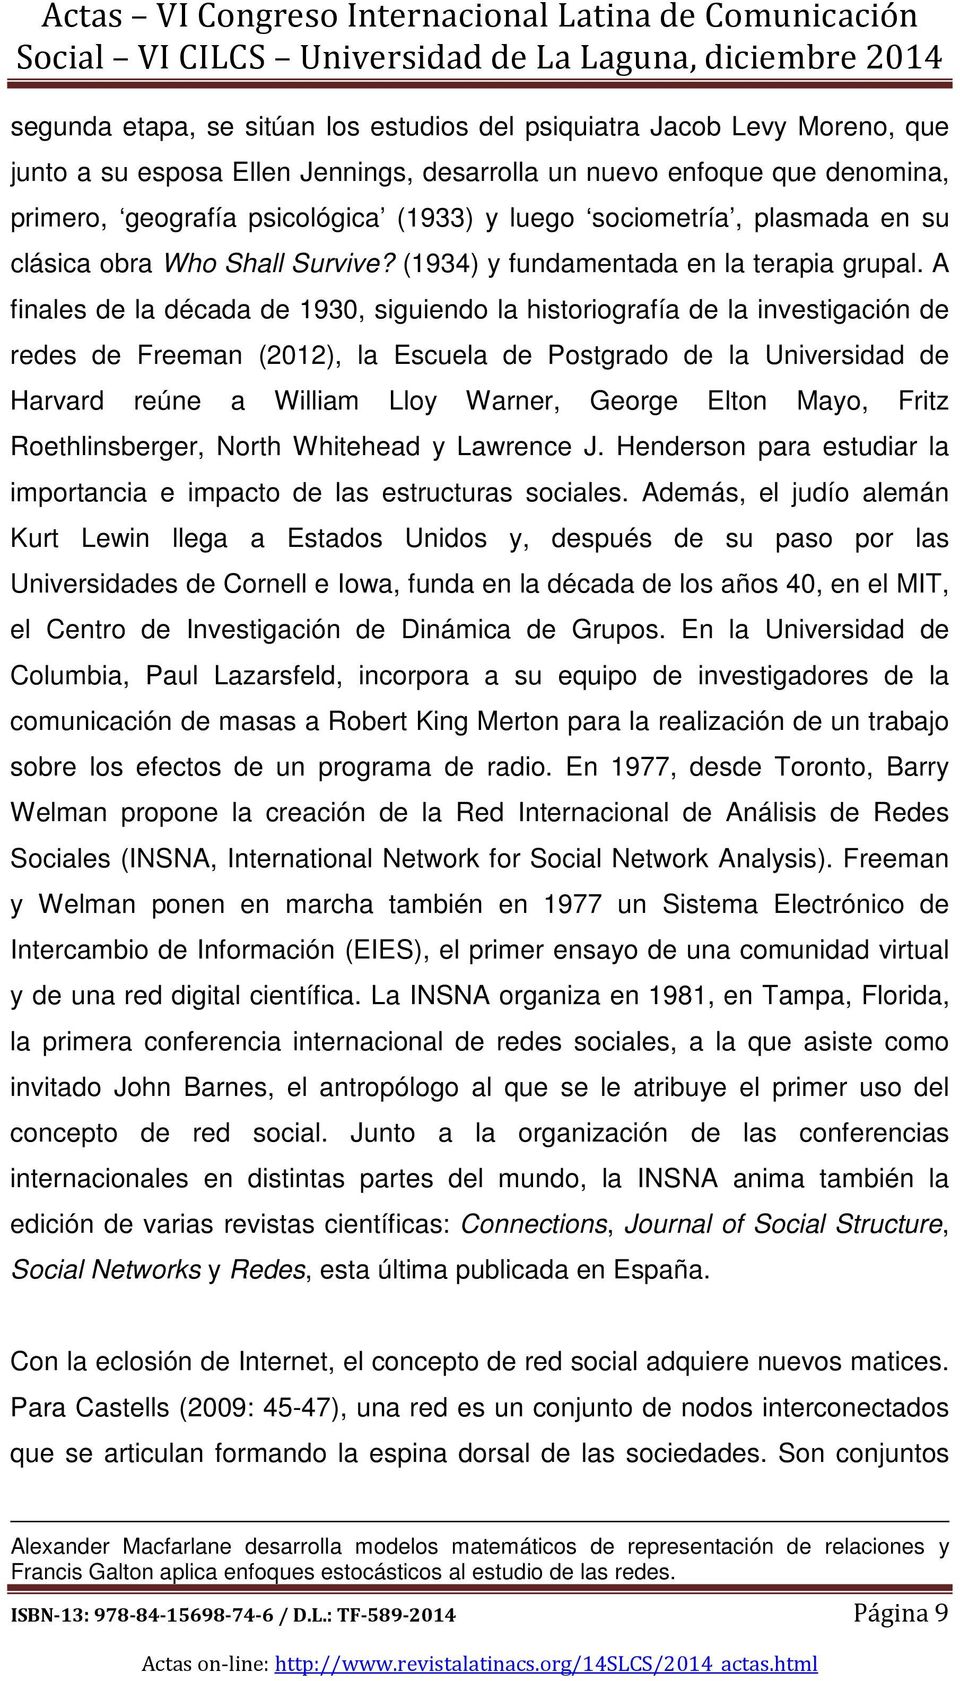 A finales de la década de 1930, siguiendo la historiografía de la investigación de redes de Freeman (2012), la Escuela de Postgrado de la Universidad de Harvard reúne a William Lloy Warner, George